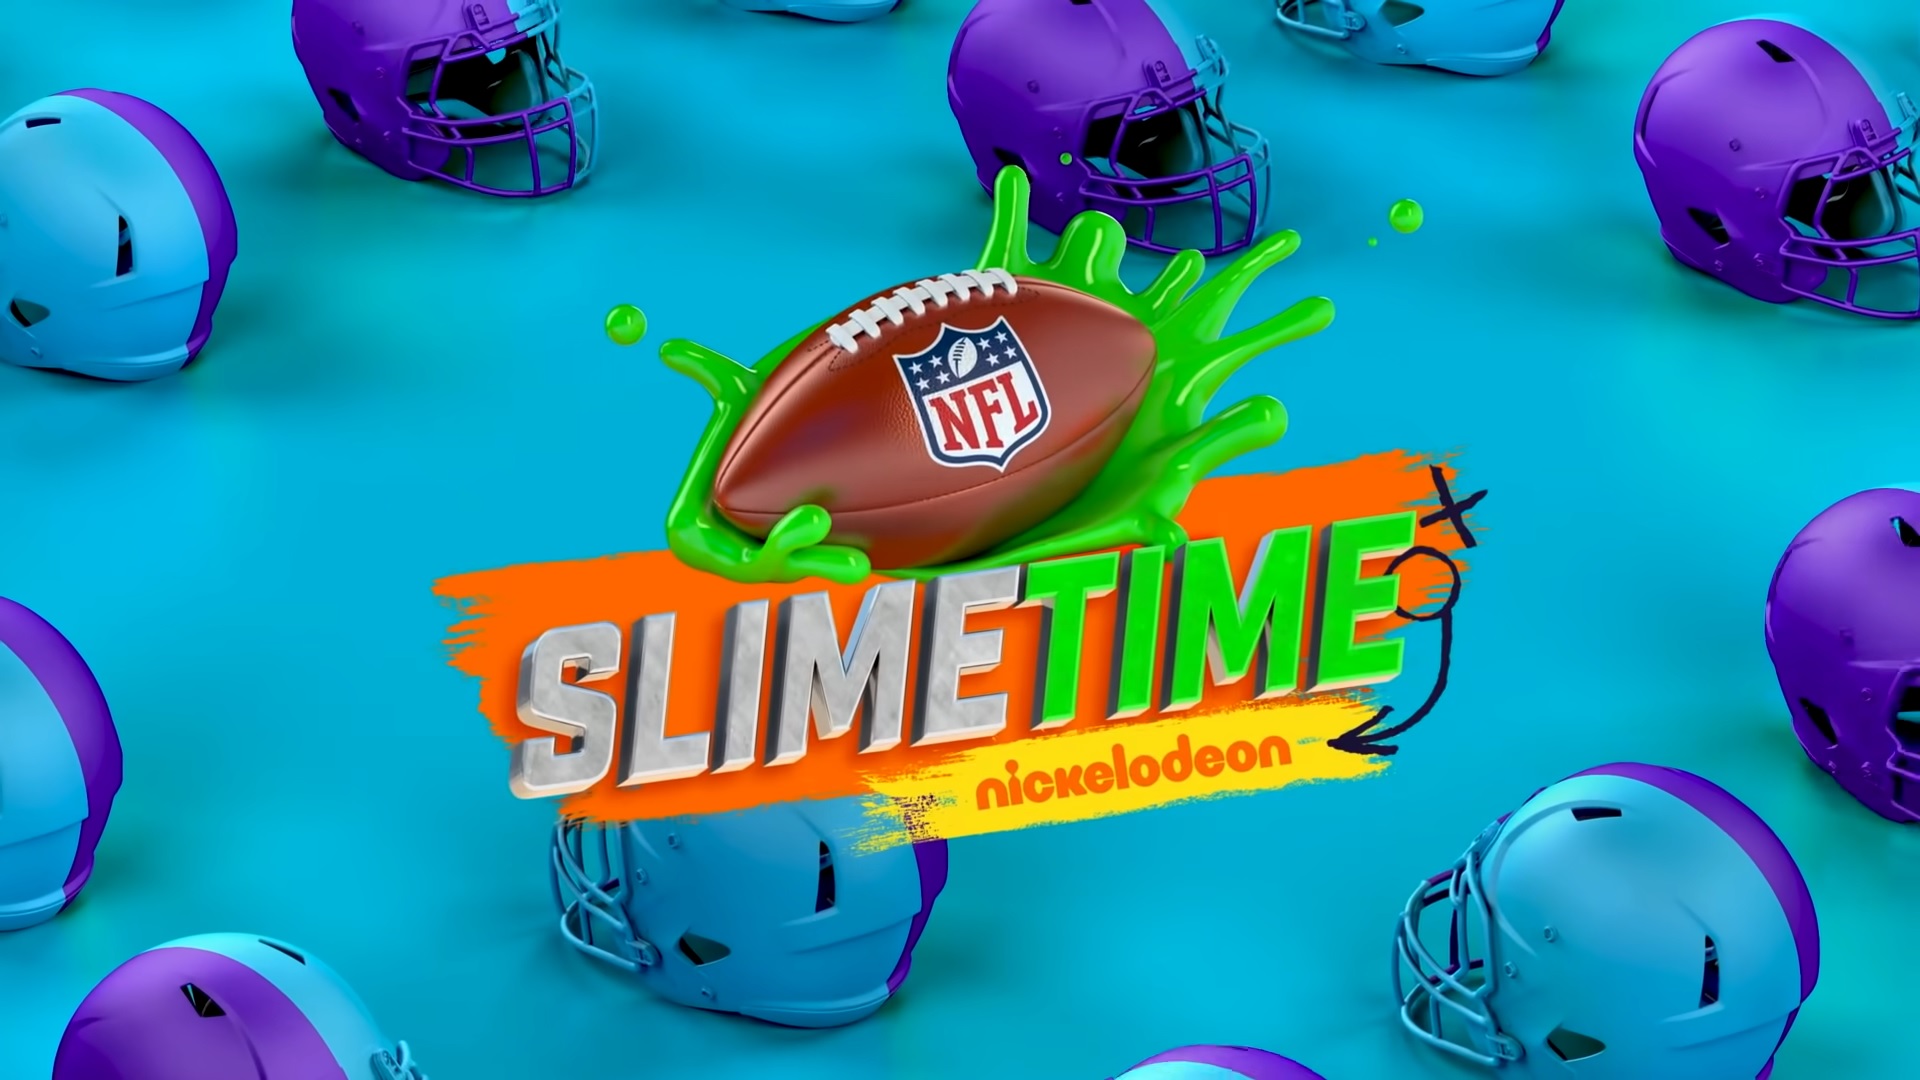 NFL Slimetime, Nickelodeon